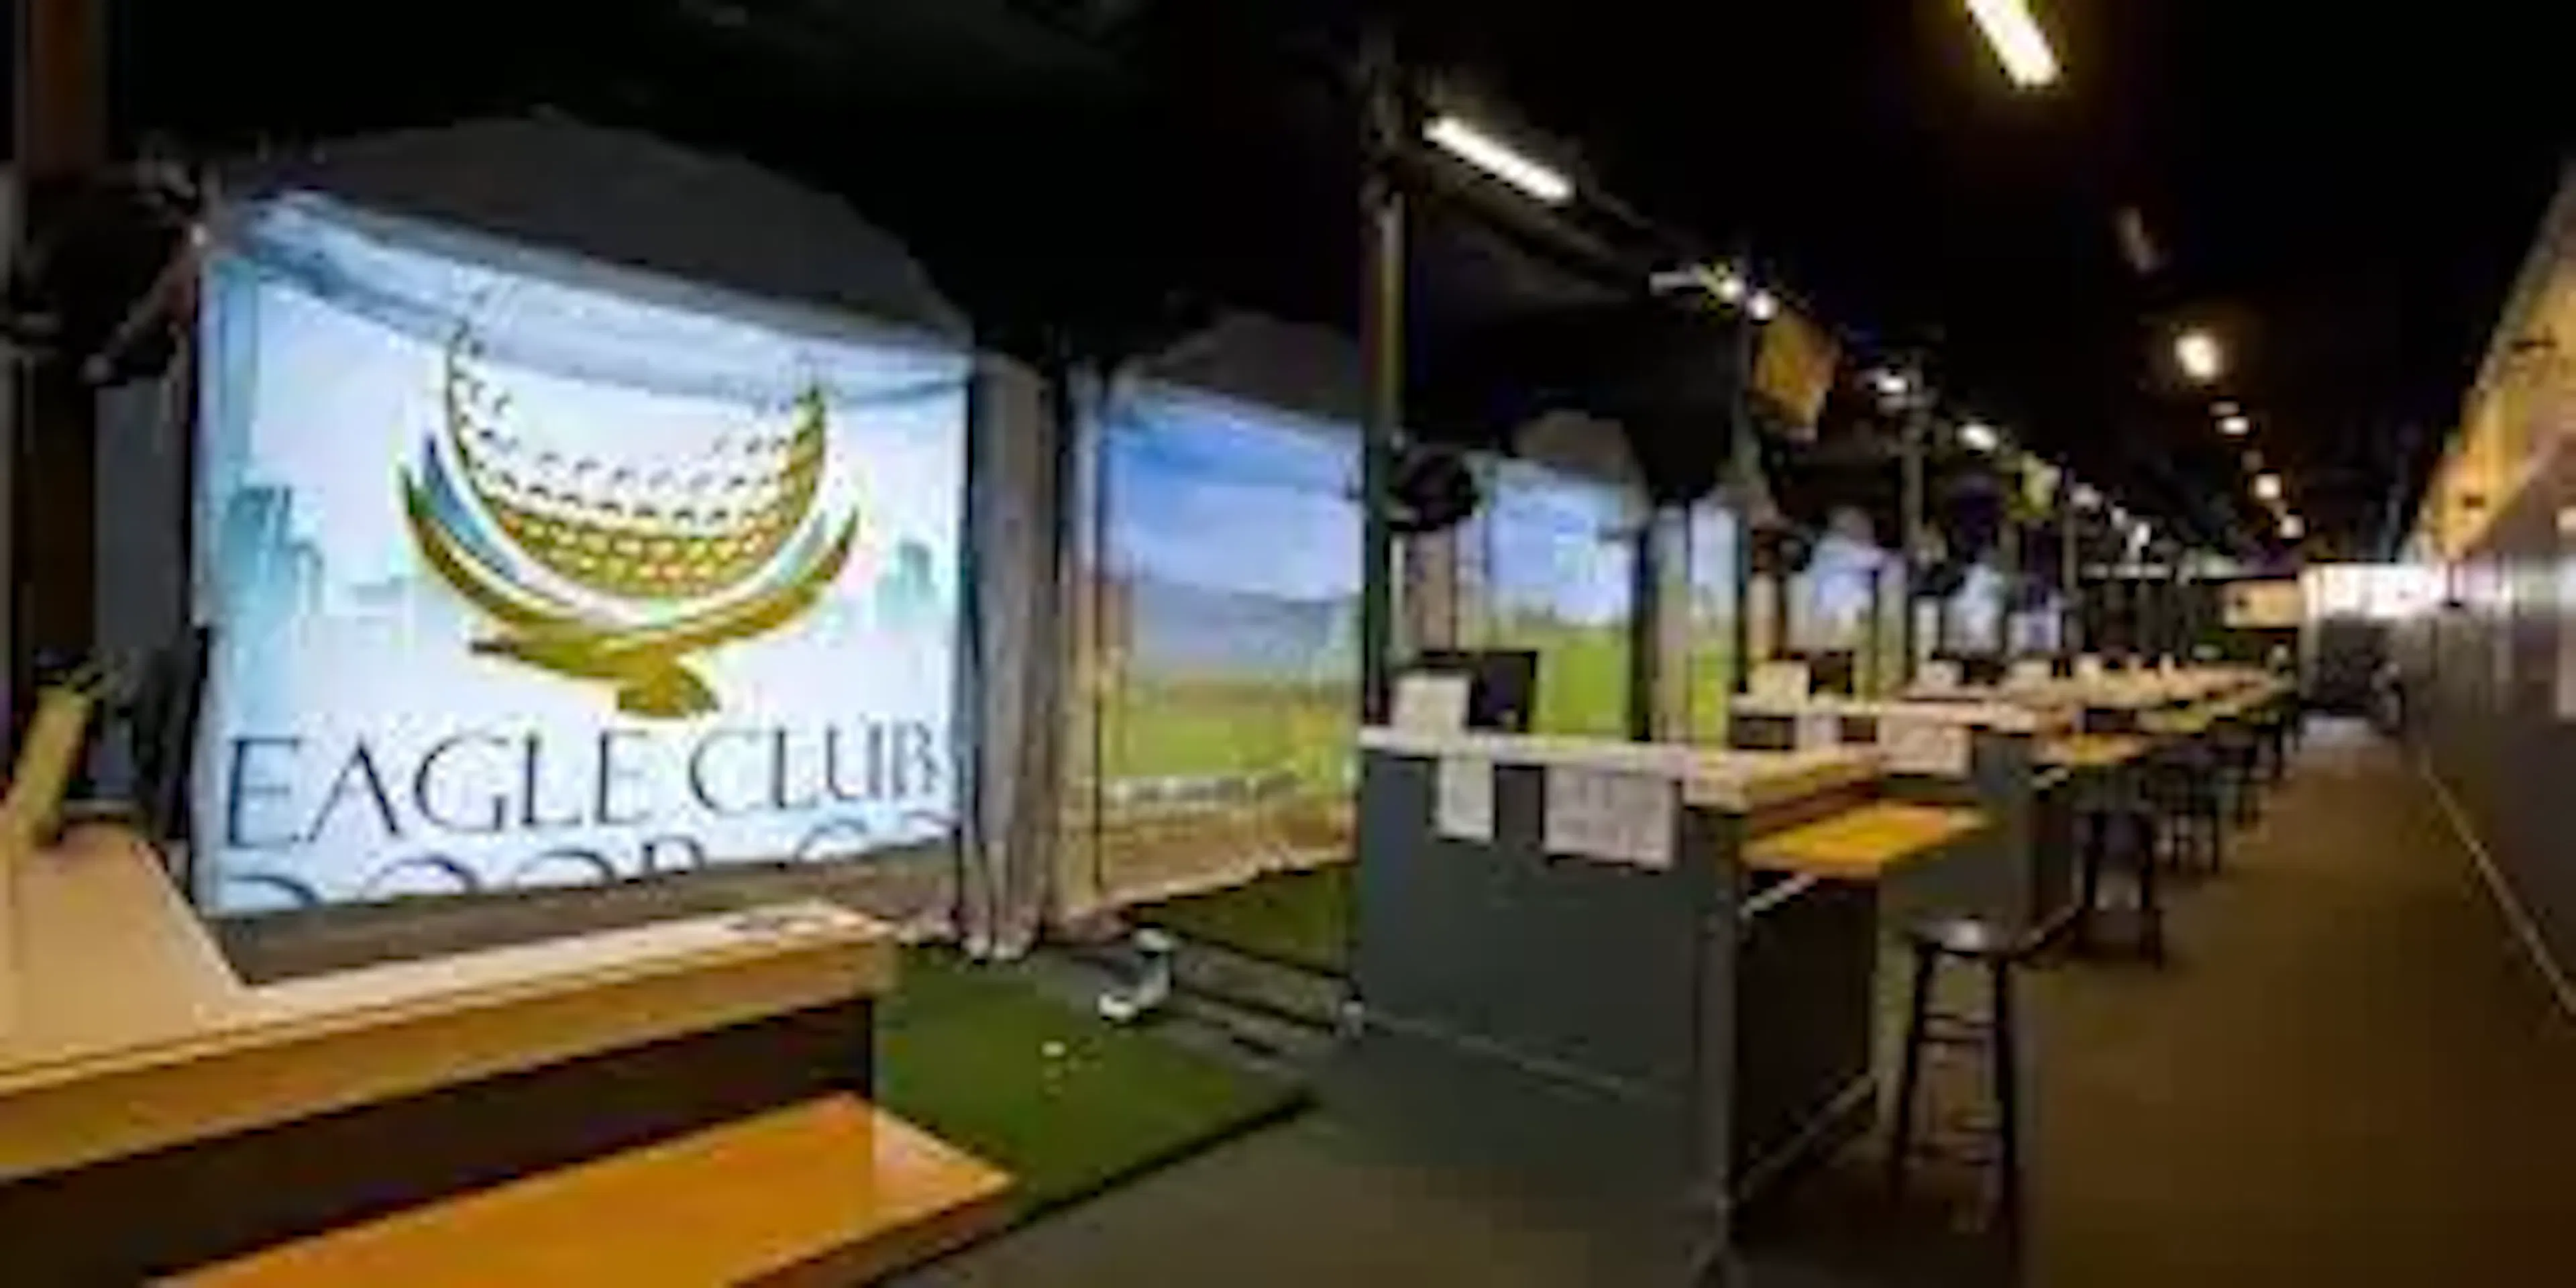 eagle club indoor golf